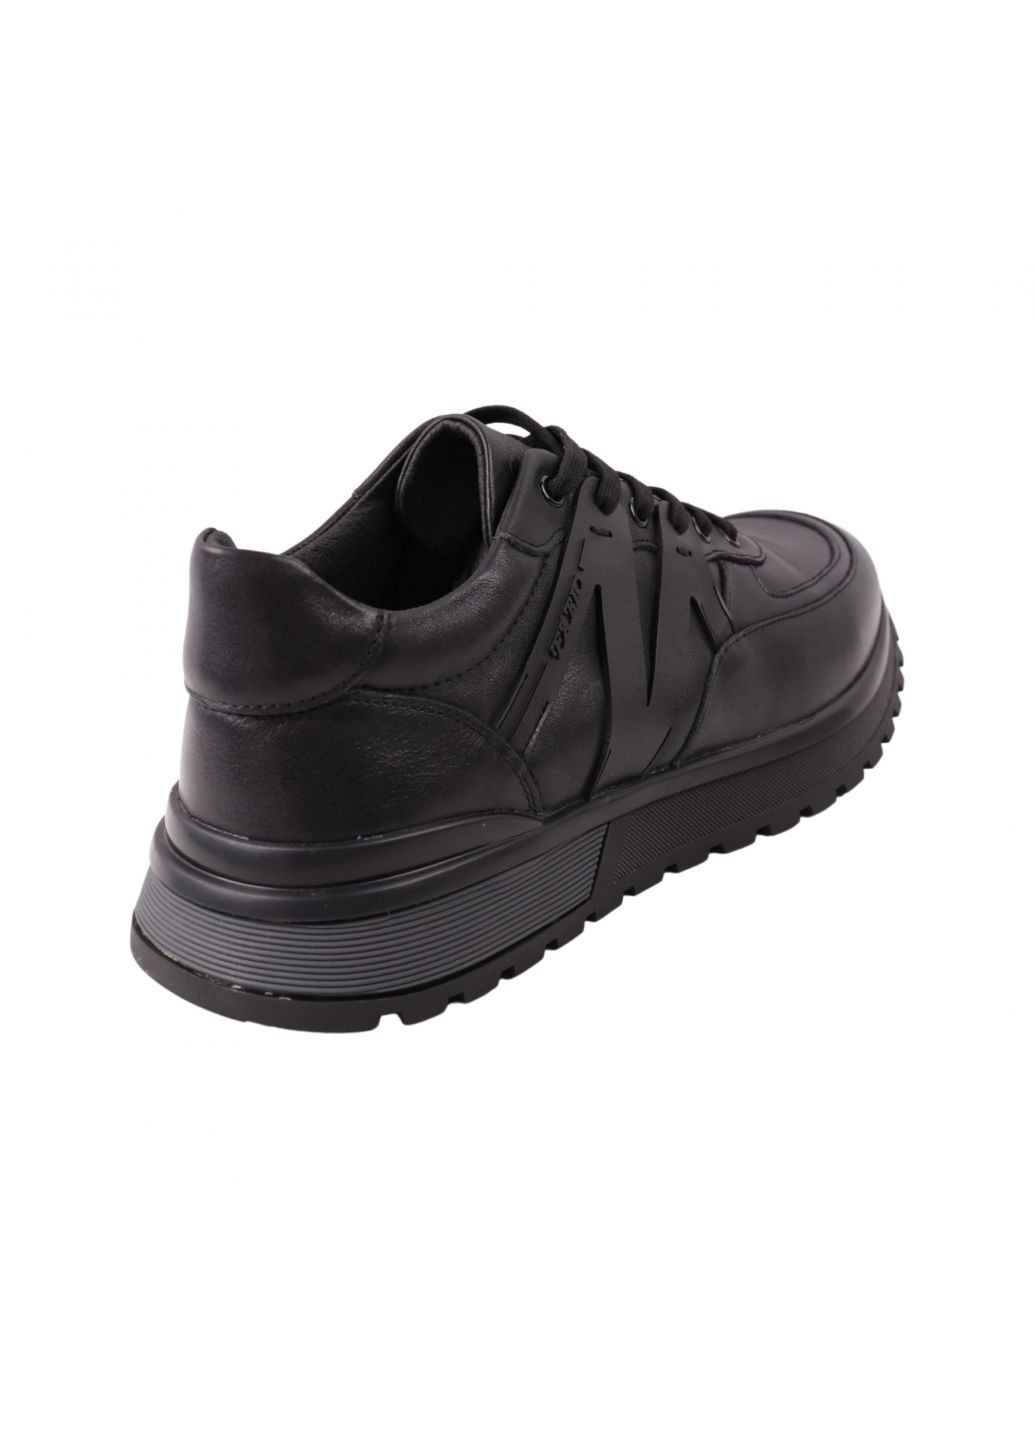 Черные кроссовки мужские черные натуральная кожа Brooman 972-23DTS